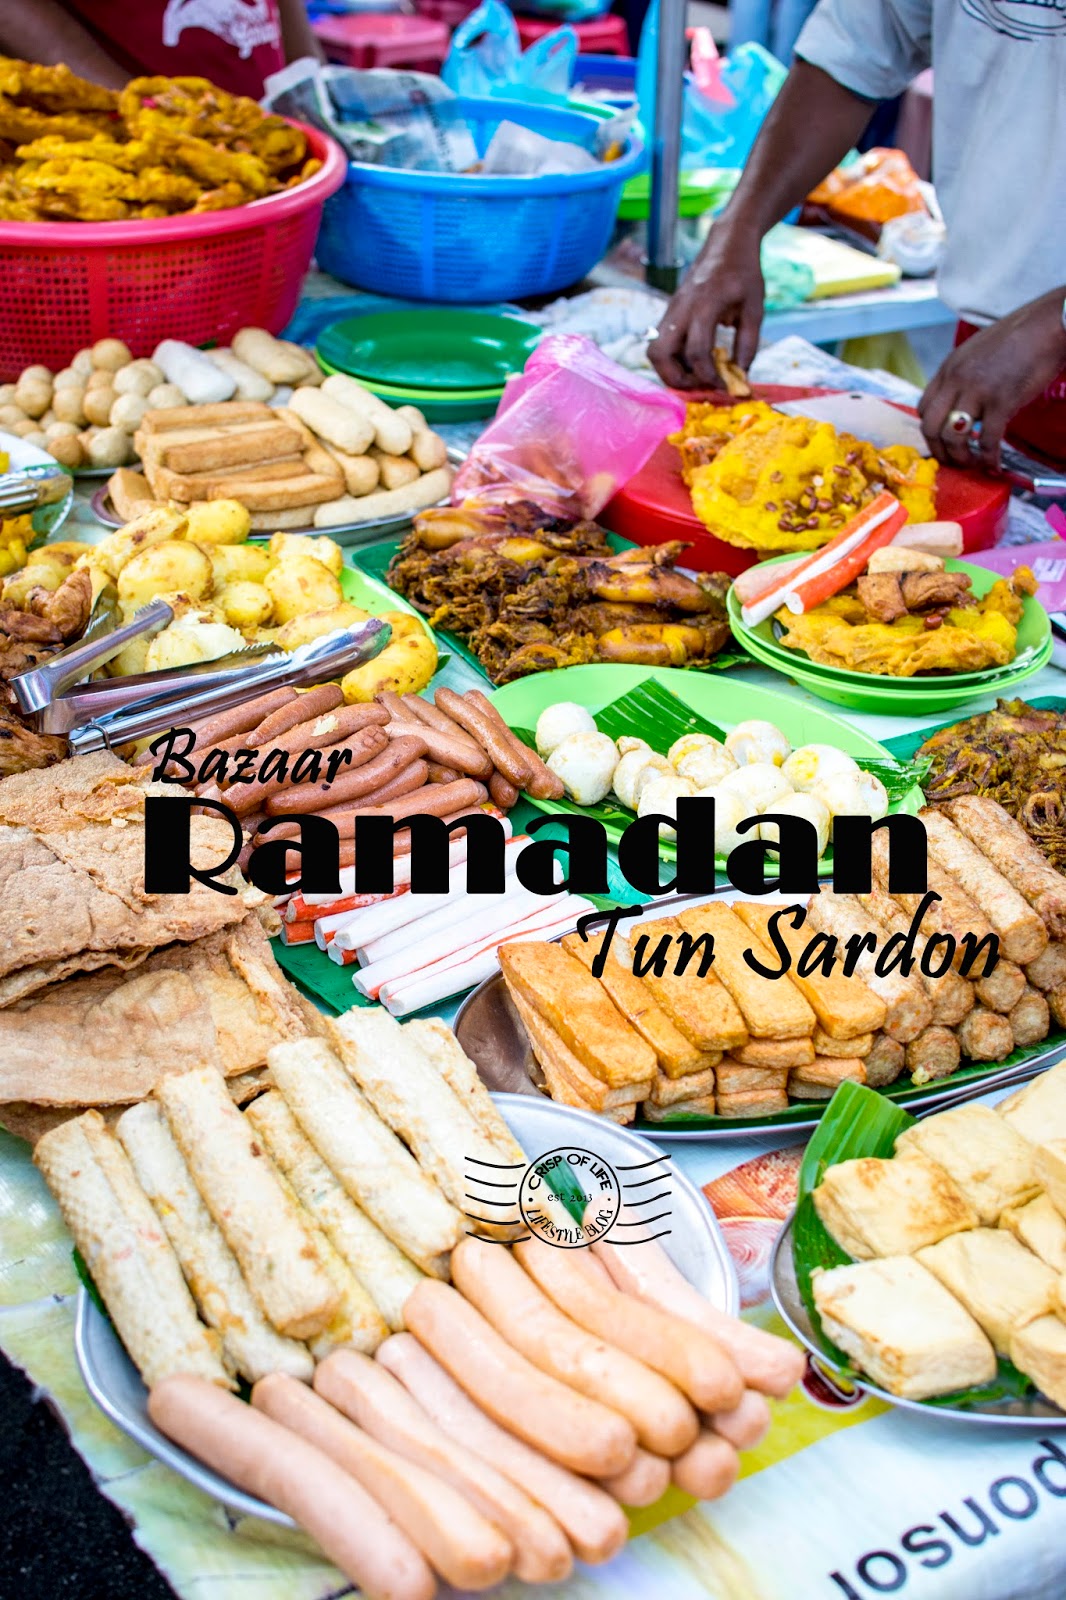 Bazaar Ramadan Tun Sardon Penang - Crisp of Life